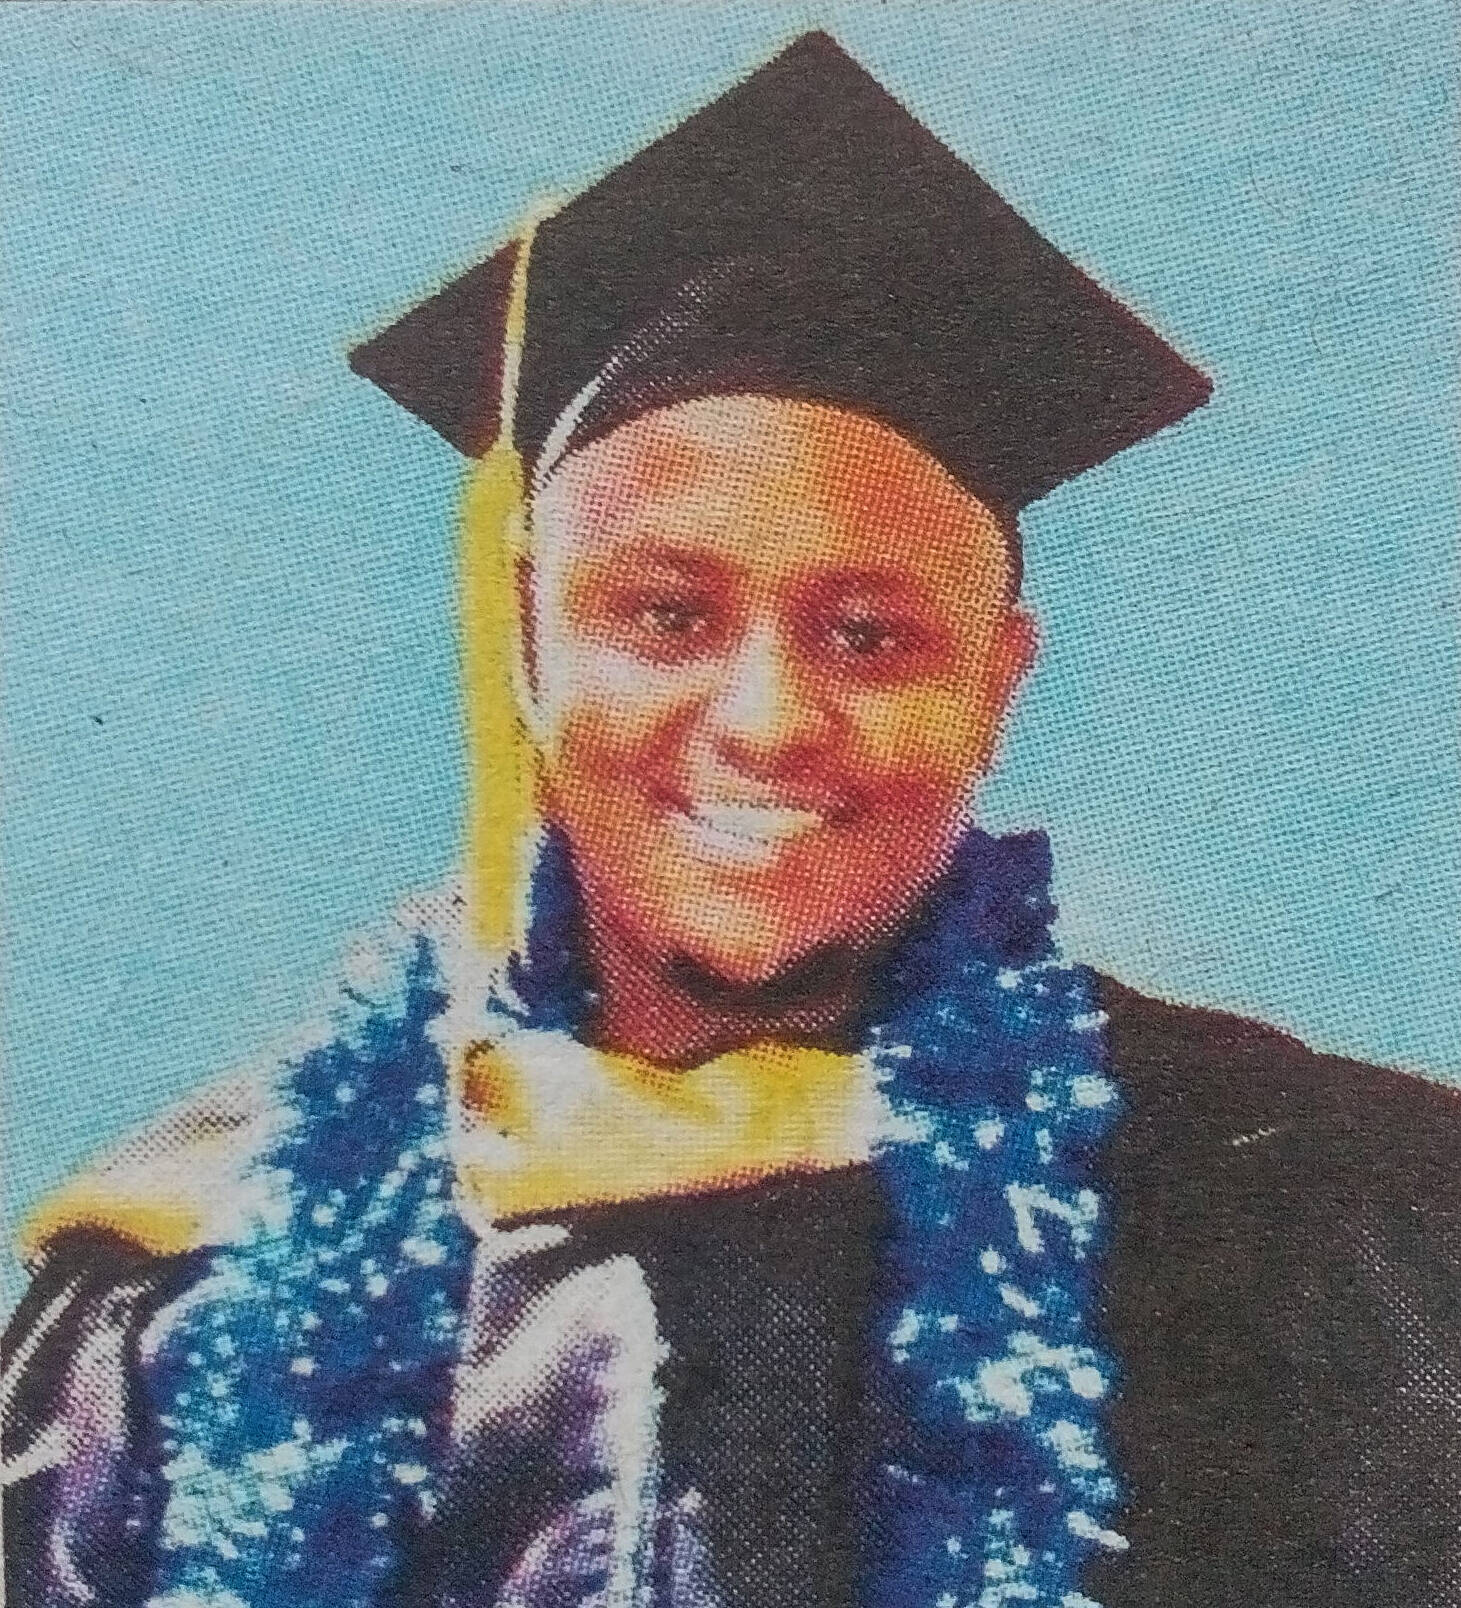 Obituary Image of Roy Kithinji Njiru 1 1 /6/ 1 9 9 1 - 3 1 / 3 / 2 0 1 7